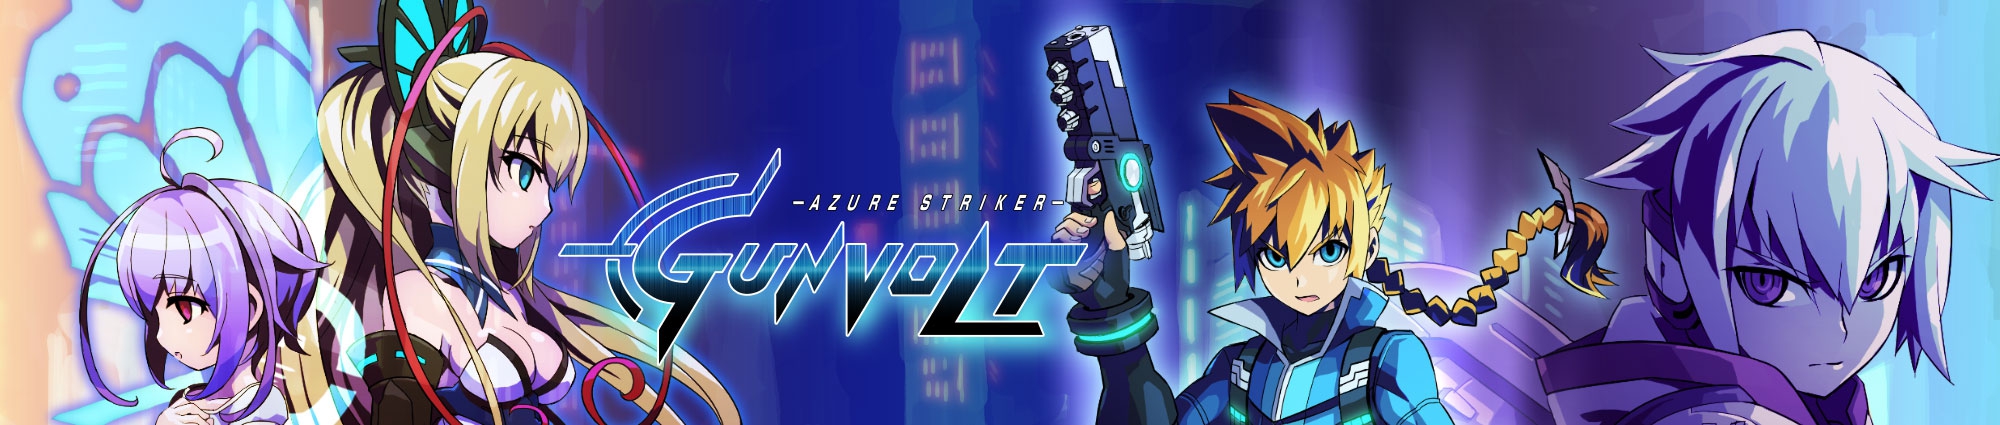 Banner Azure Striker Gunvolt